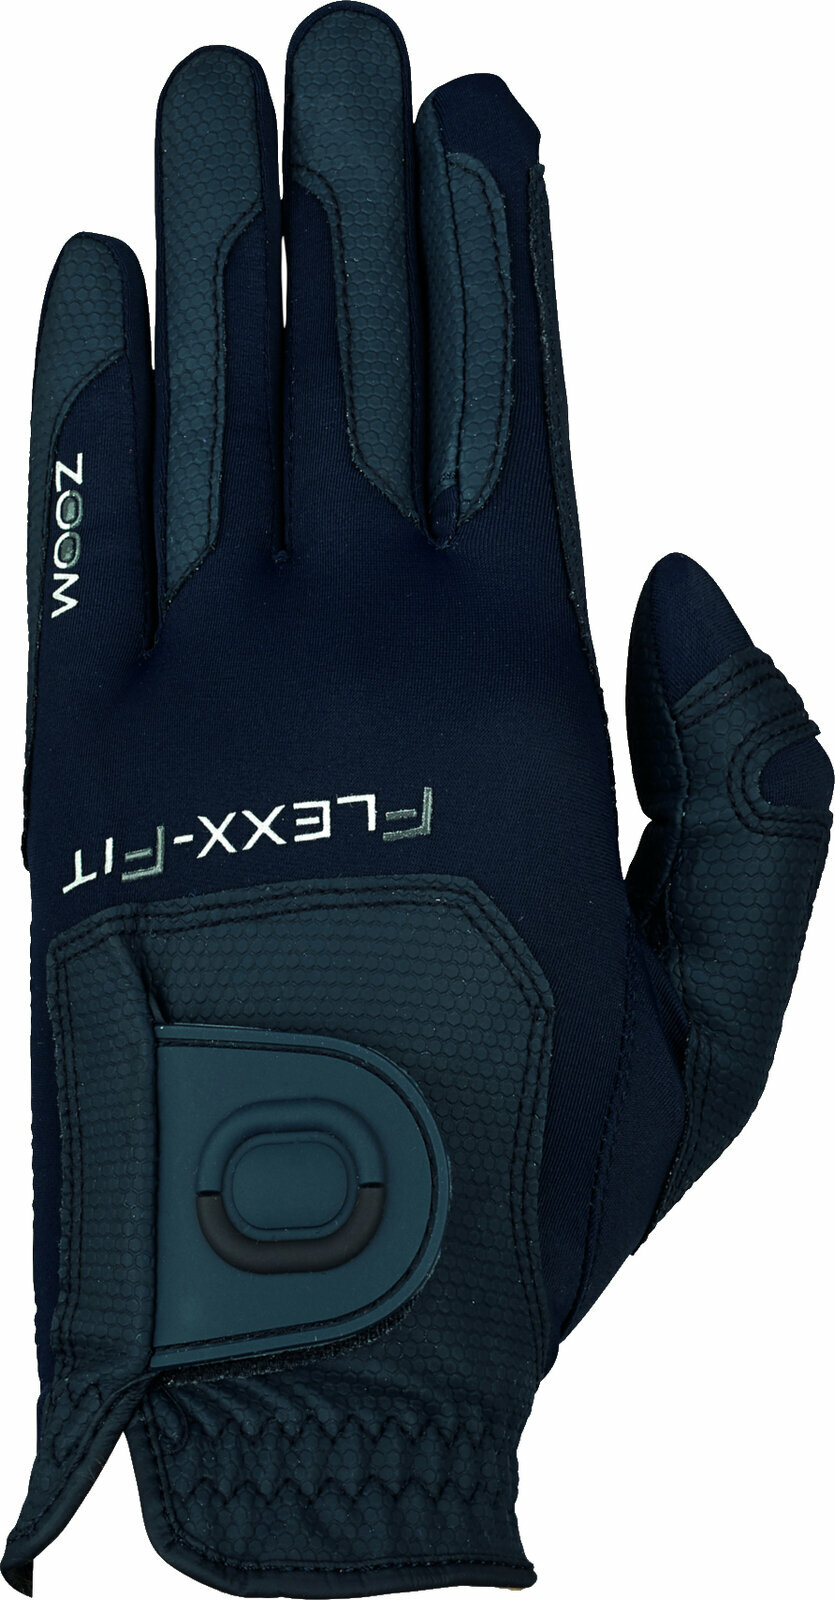 Handschuhe Zoom Gloves Weather Style Mens Golf Glove Navy LH